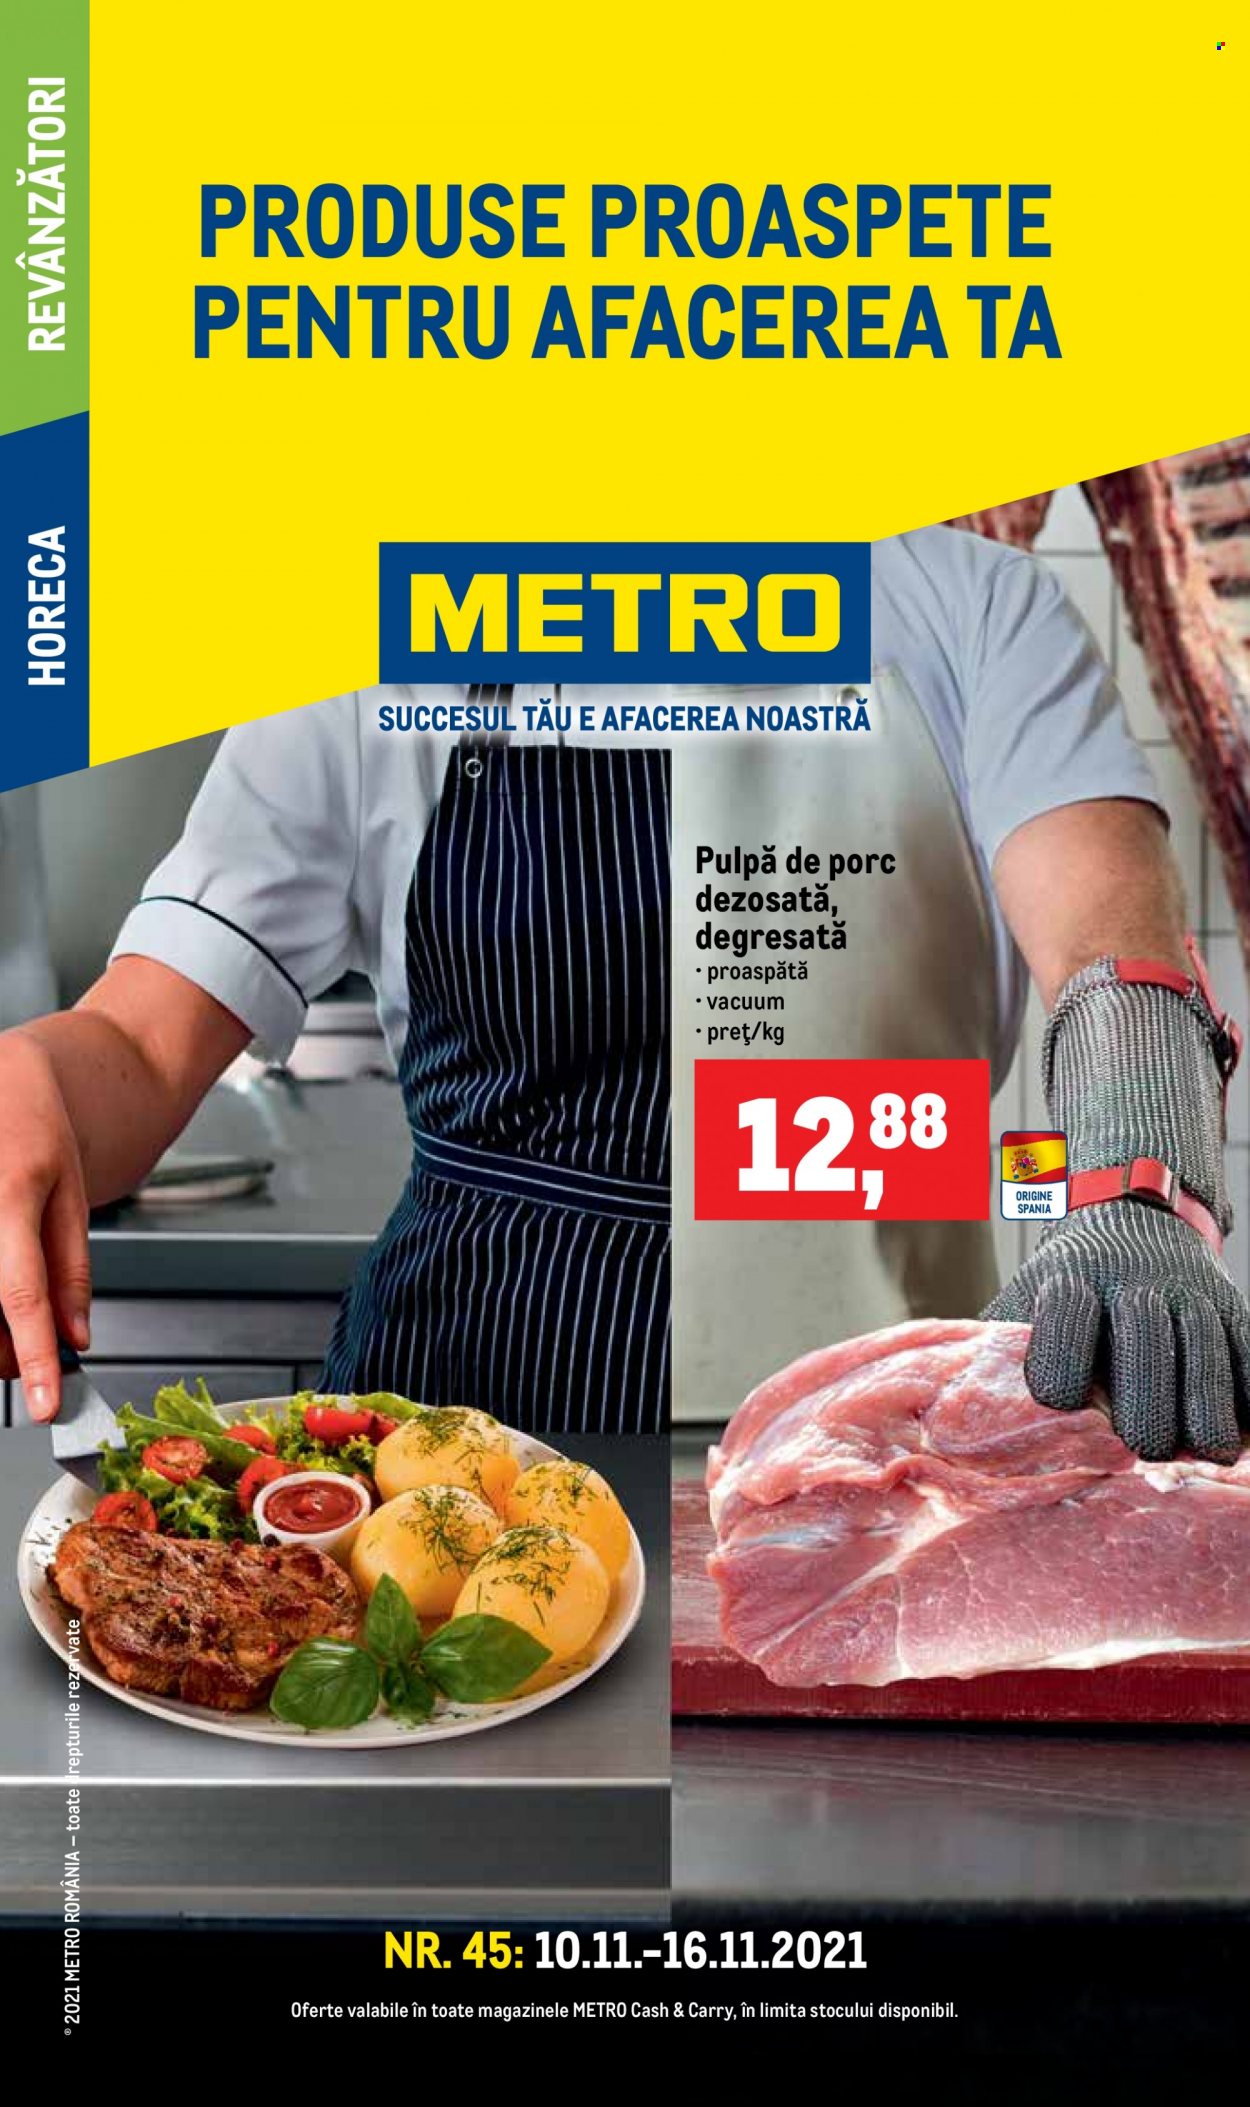 thumbnail - Cataloage Metro - 10.11.2021 - 16.11.2021 - Produse în vânzare - carne de porc, pulpă de porc. Pagina 1.